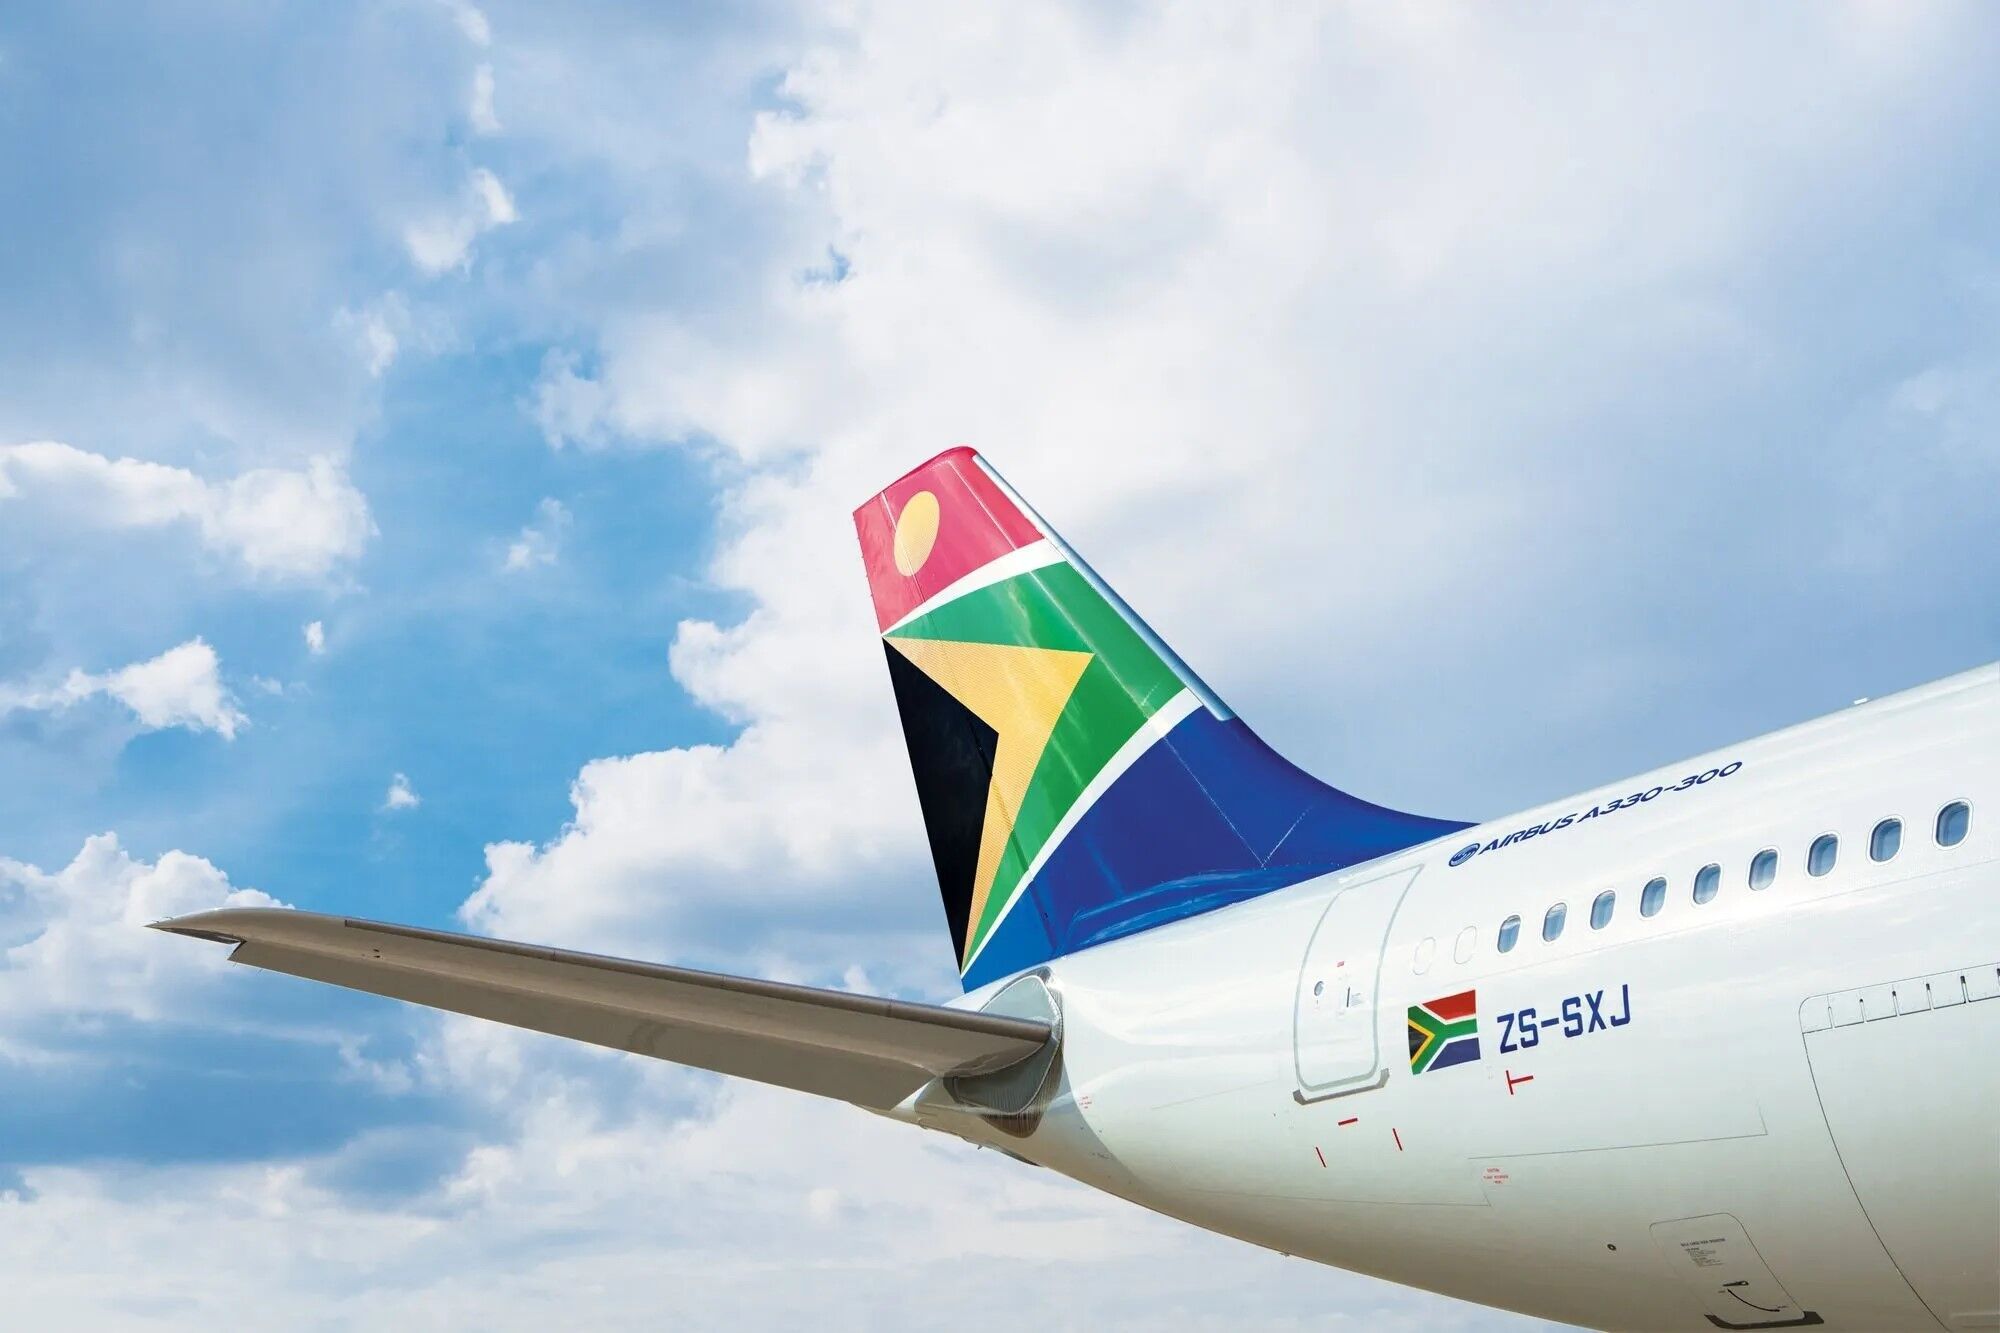 Авиакомпания ЮАР позволила детям до 11 лет лететь бесплатно в сопровождении родителей, но есть нюанс